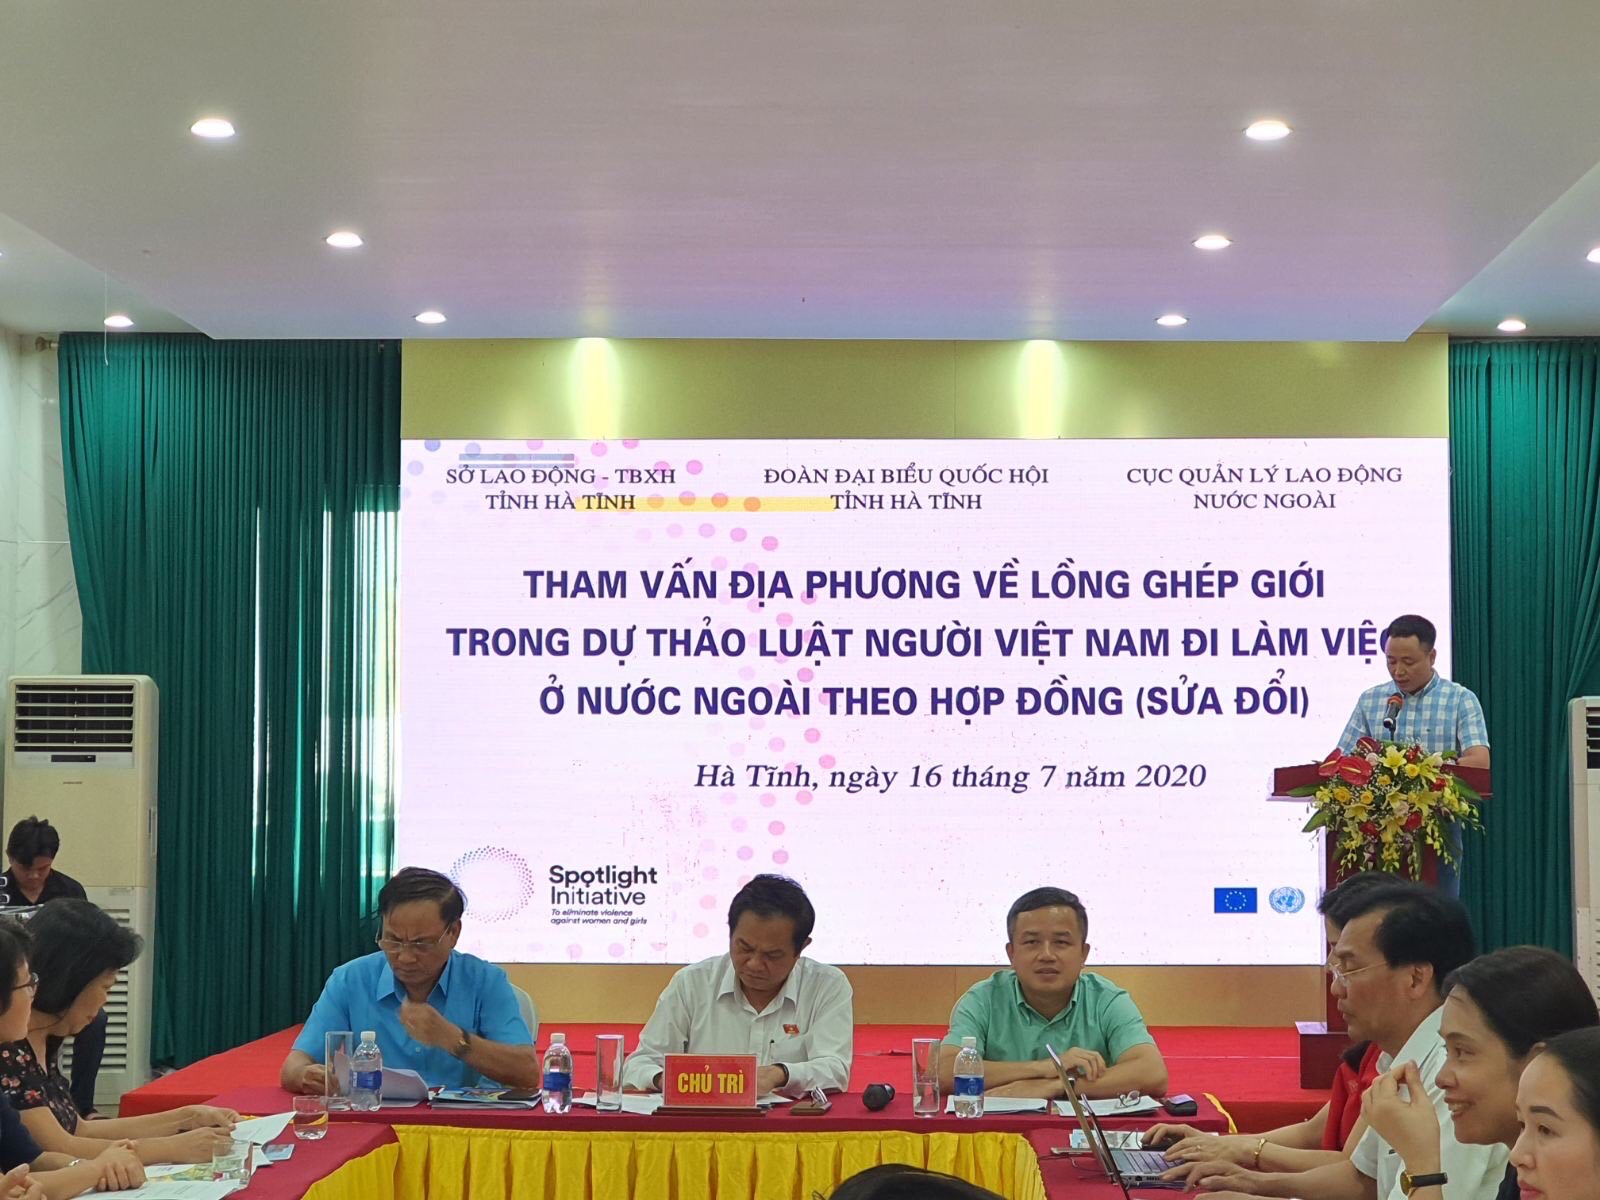  Hội nghị tại Hà Tĩnh: Tham vấn địa phương về lồng ghép giới trong dự thảo Luật Người lao động đi làm việc ở nước ngoài theo hợp đồng (sửa đổi) 